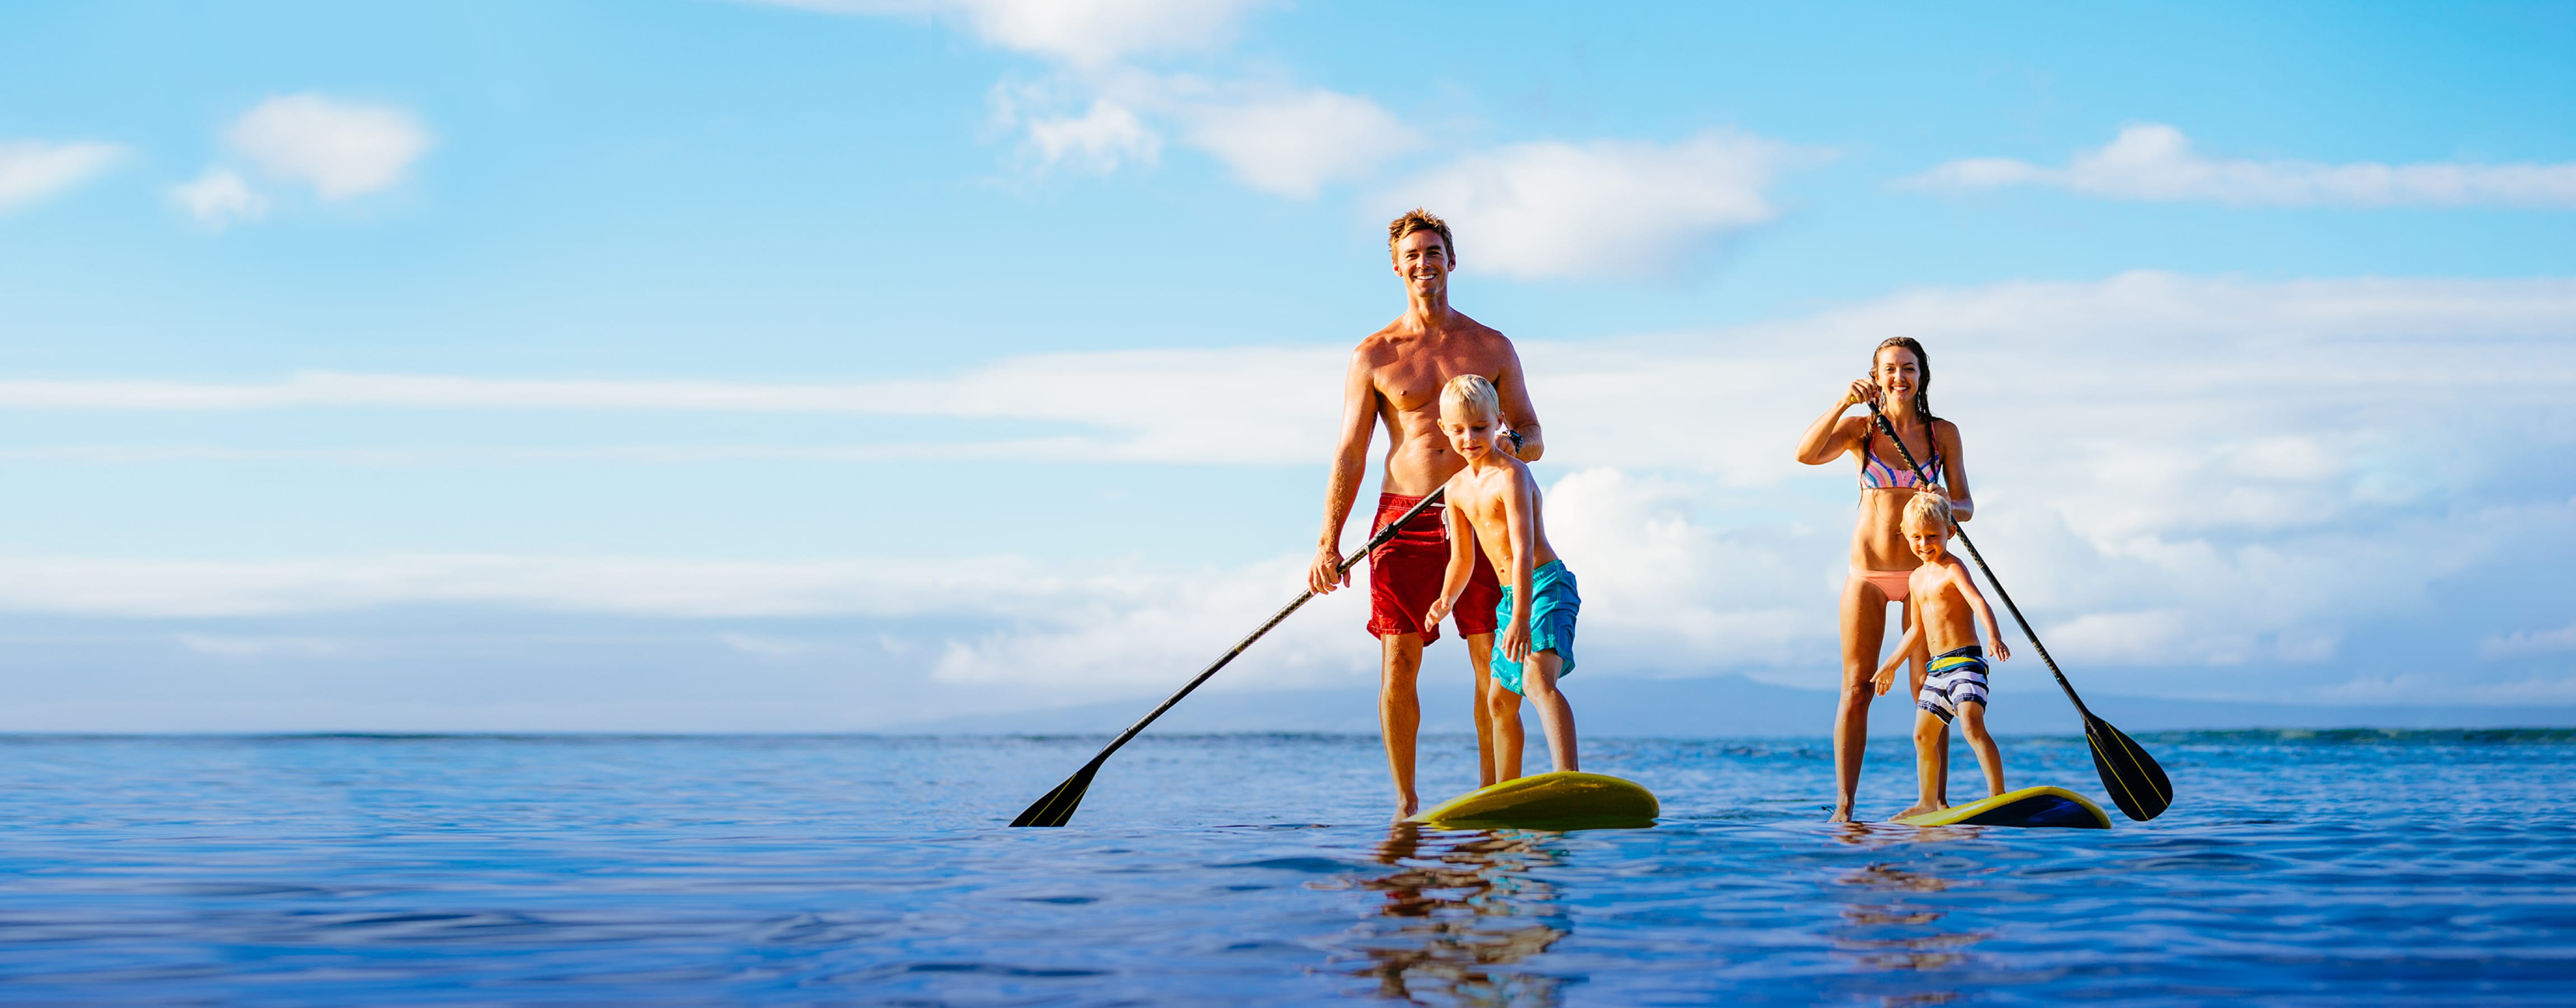 Водные виды спорта, которыми можно заниматься на реке, озере и море | Блог Ингосстрах